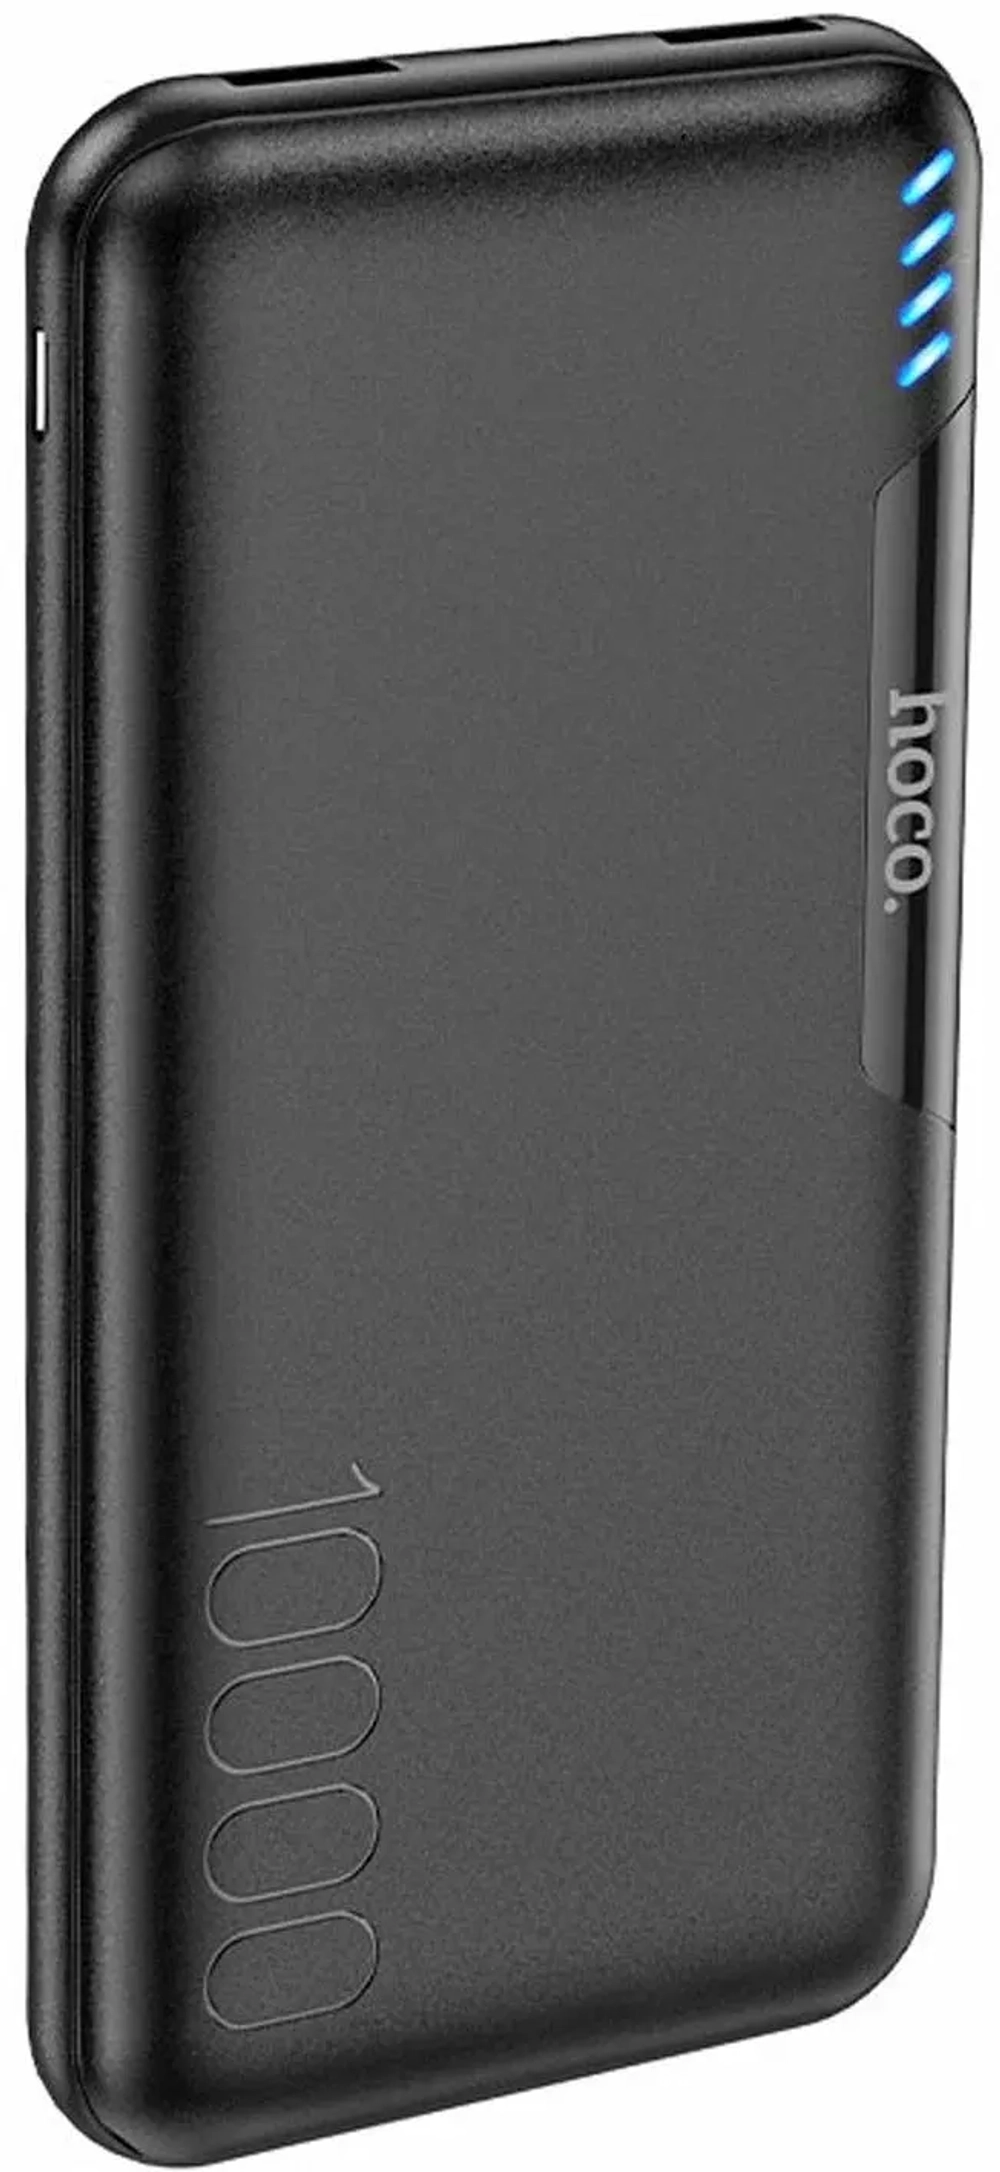 Портативный аккумулятор Hoco J82  Easylink 10000mAh черный